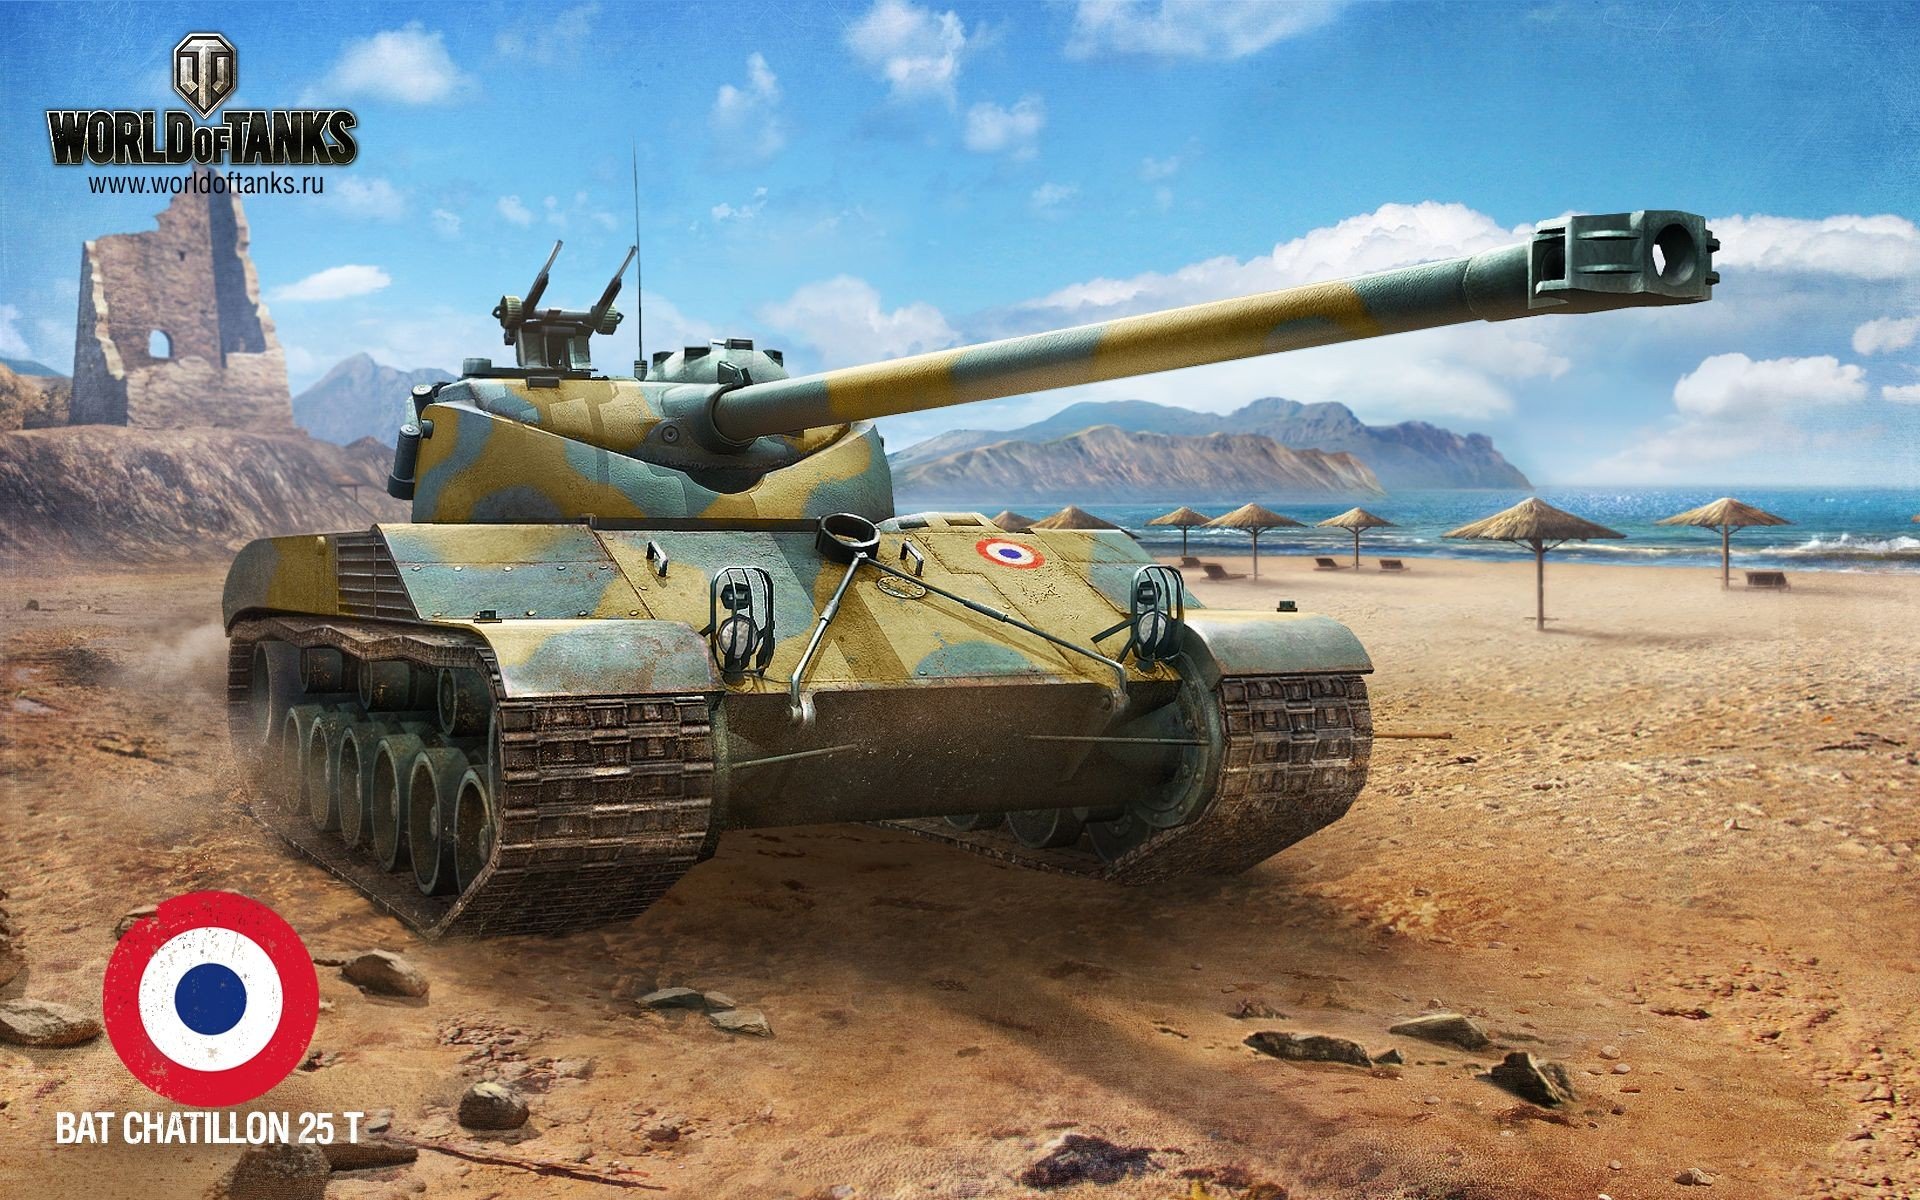 World of Tanks, Tank, Batignolles Chatillon 25t, Wargaming Wallpaper